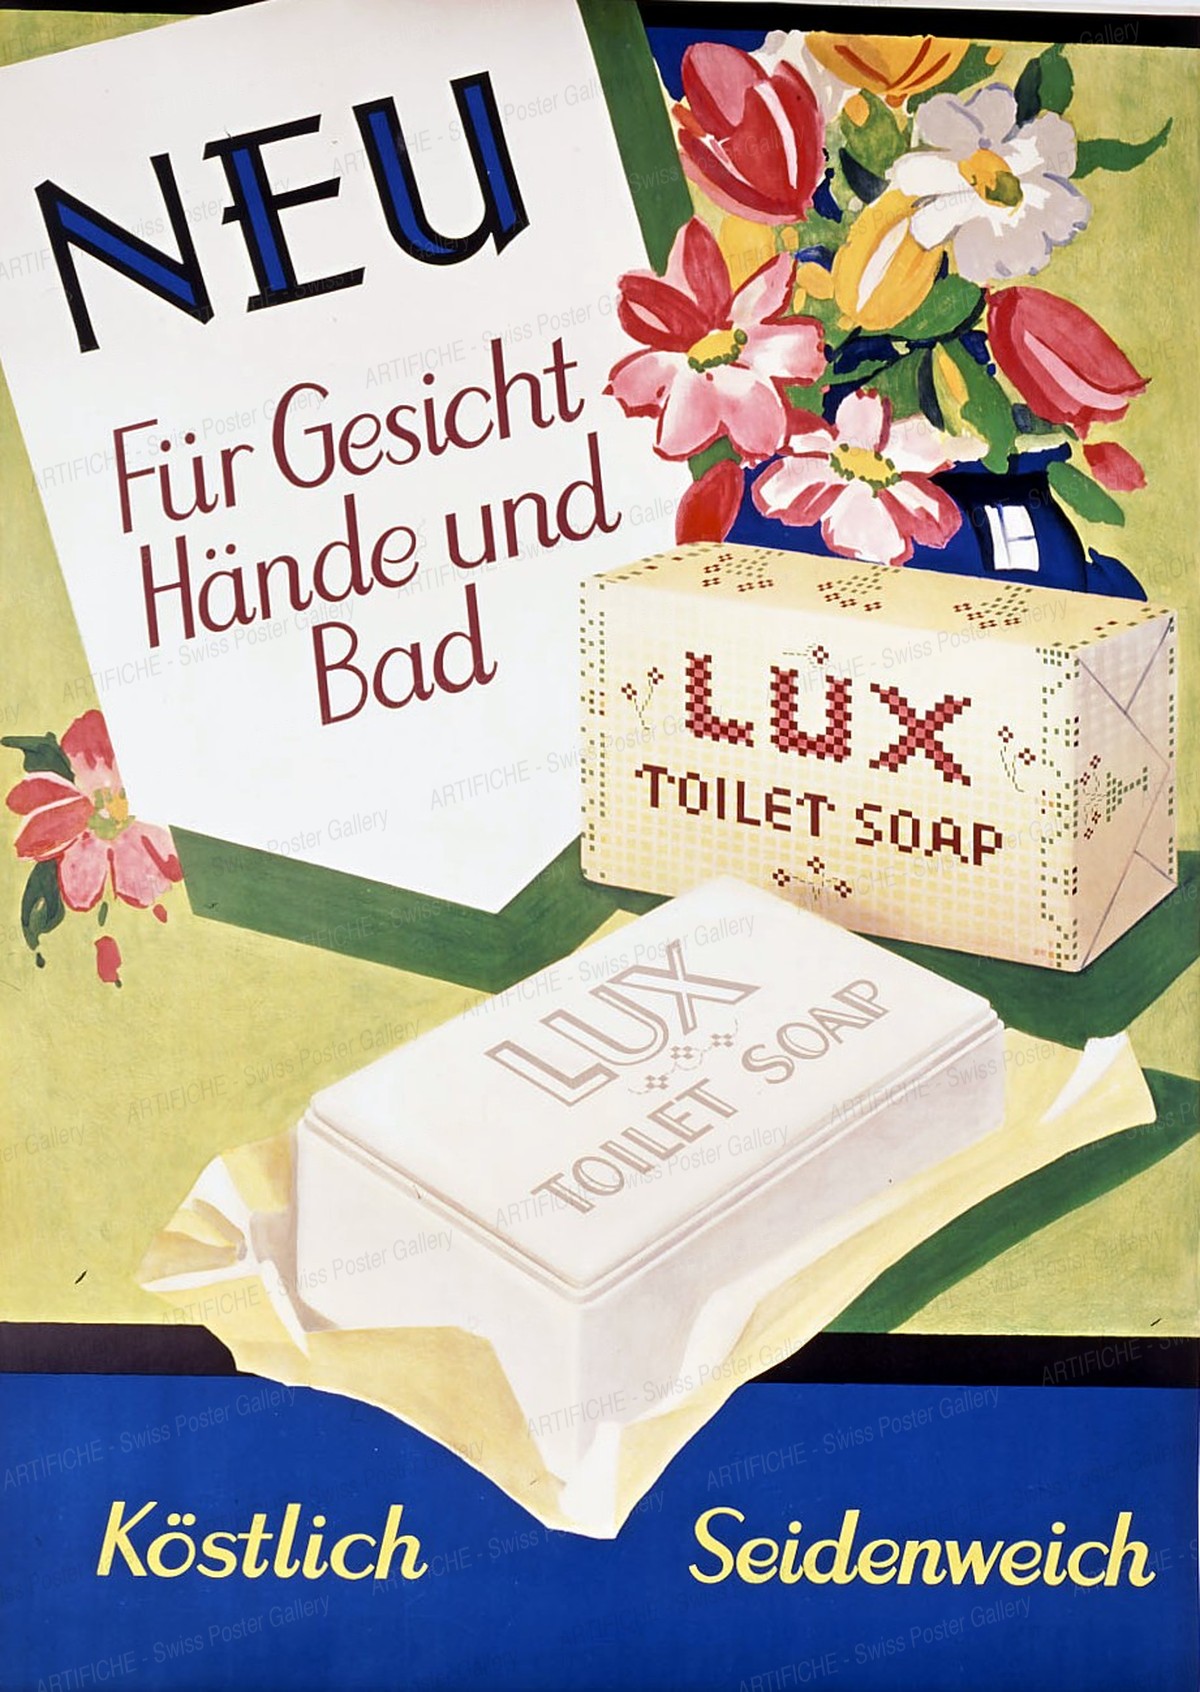 LUX Toilet Soap – NEU Für Gesicht Hände und Bad – köstlich seidenweich, Artist unknown